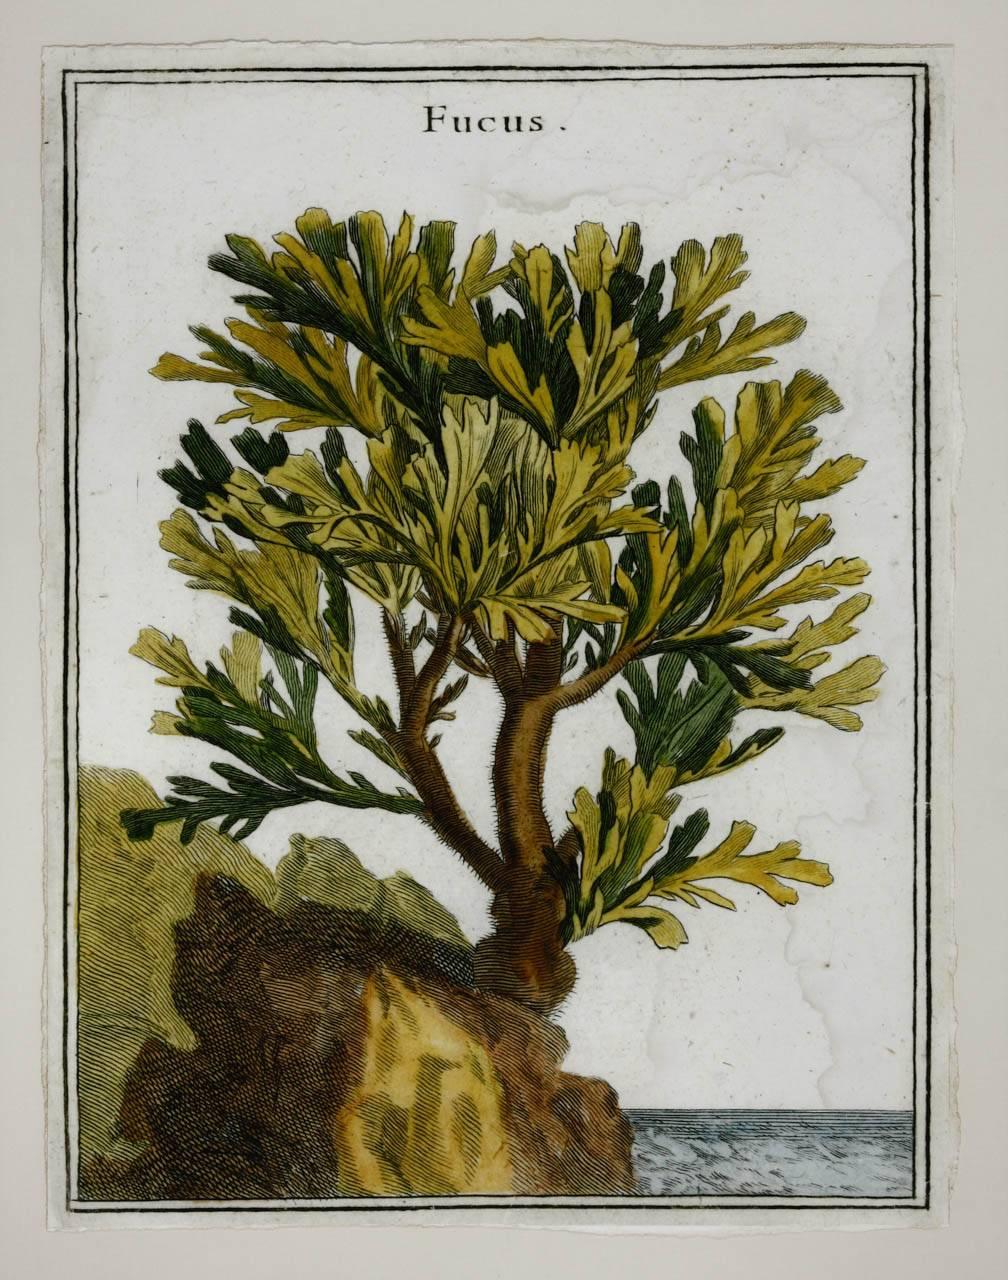 Victorien Impression d'algues botaniques du XVIIIe siècle provenant de curiosités naturelles en vente